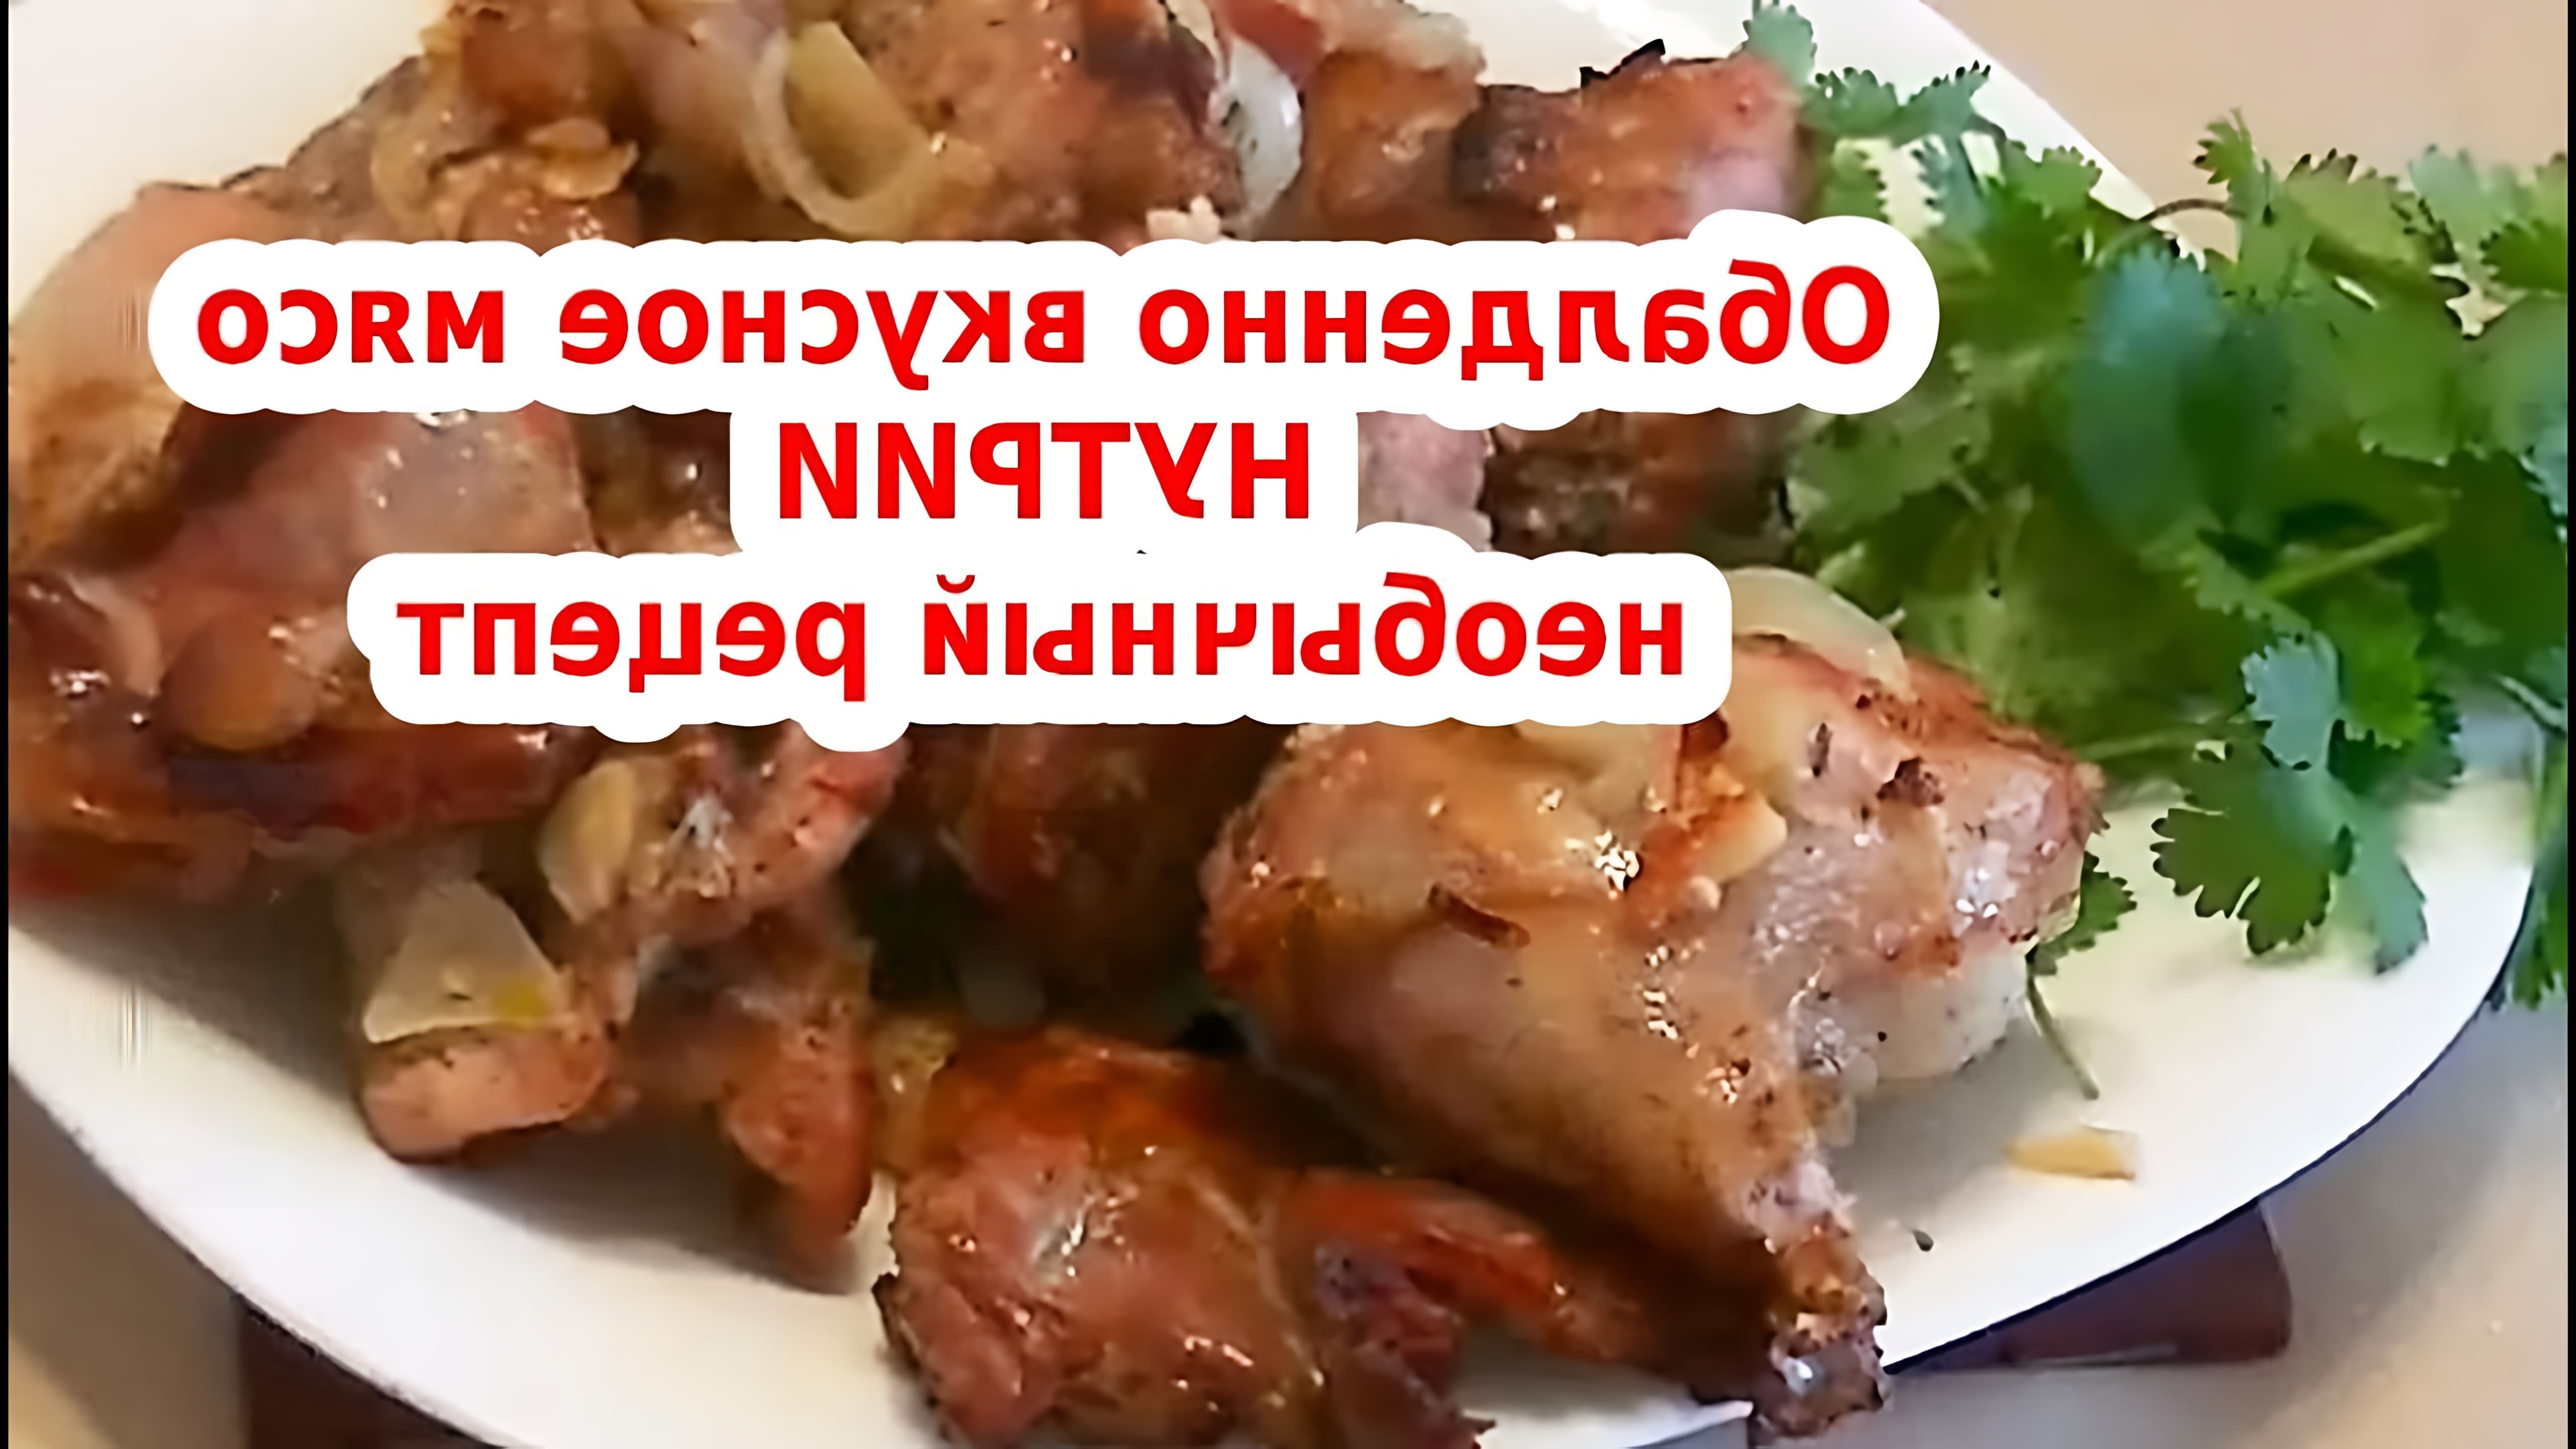 В этом видео Янина Коновалова показывает, как приготовить вкусное блюдо из нутри